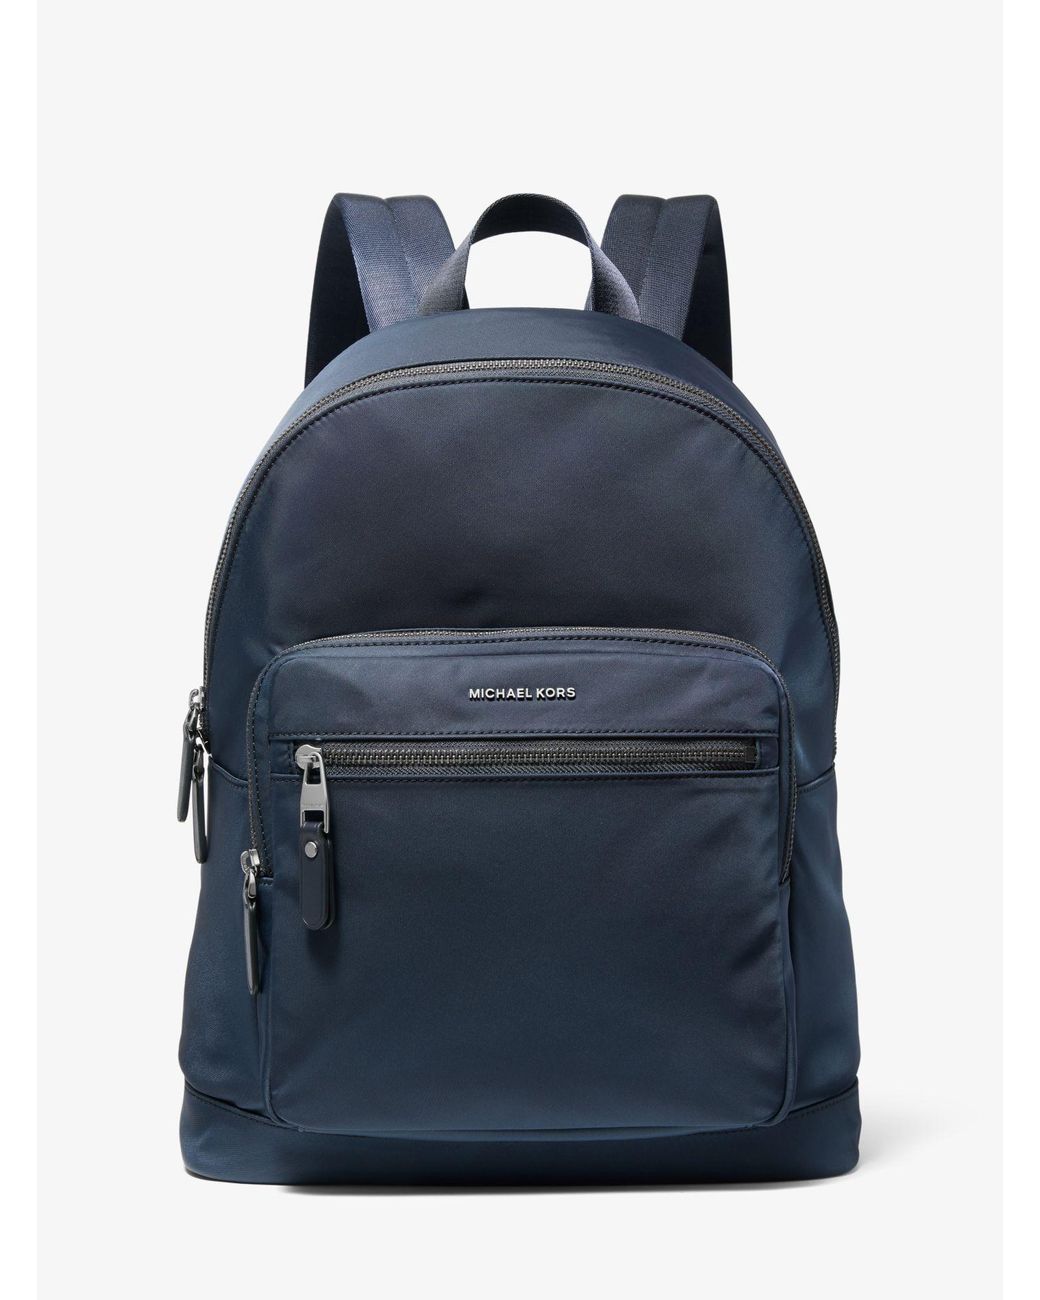 Michael Kors Synthetic Hudson Nylon Backpack in Navy (Blue) for Men - Lyst